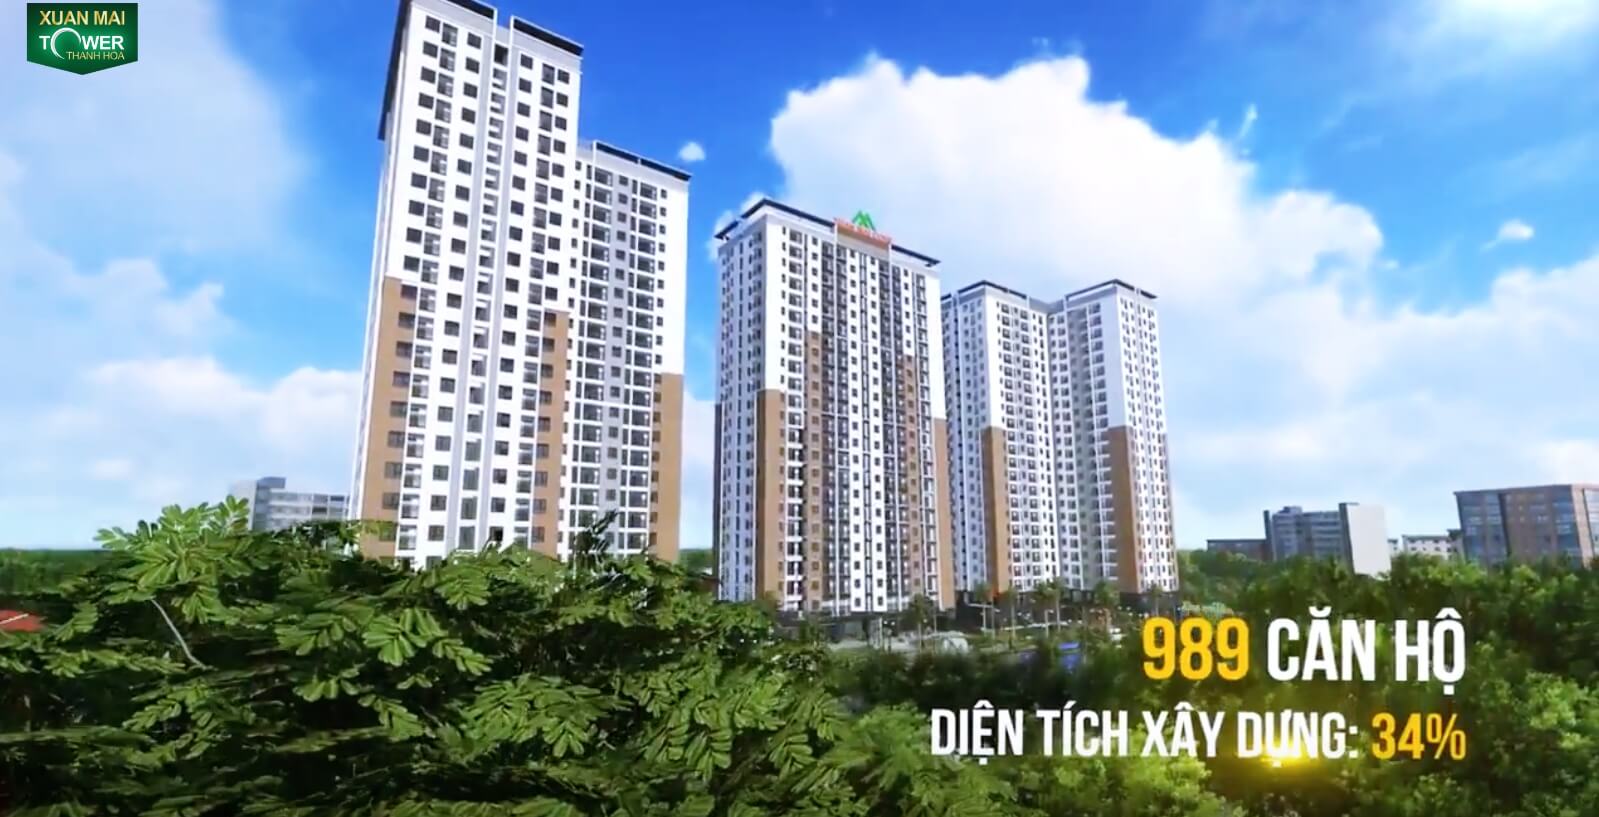 Dự án Xuân Mai Tower Thanh Hóa 989 căn hộ